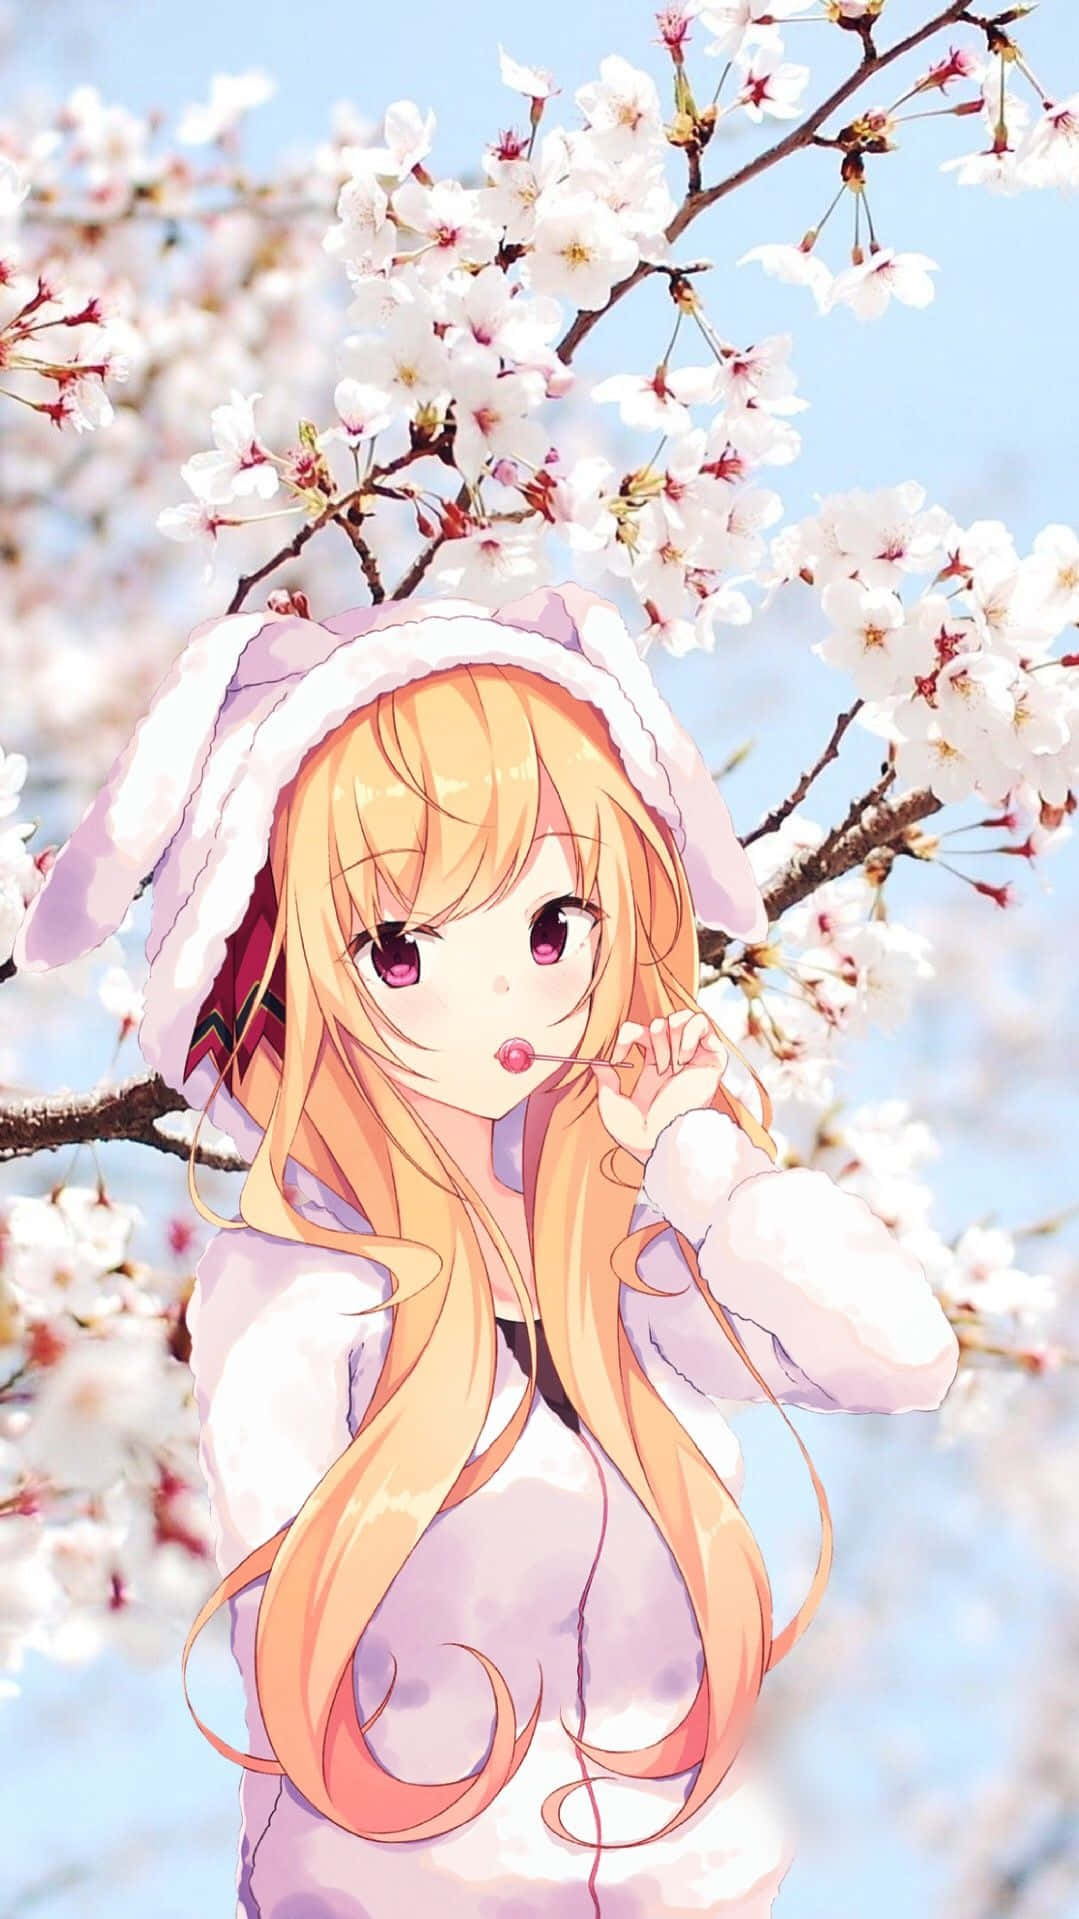 Adorable and prancing anime girl Wallpaper